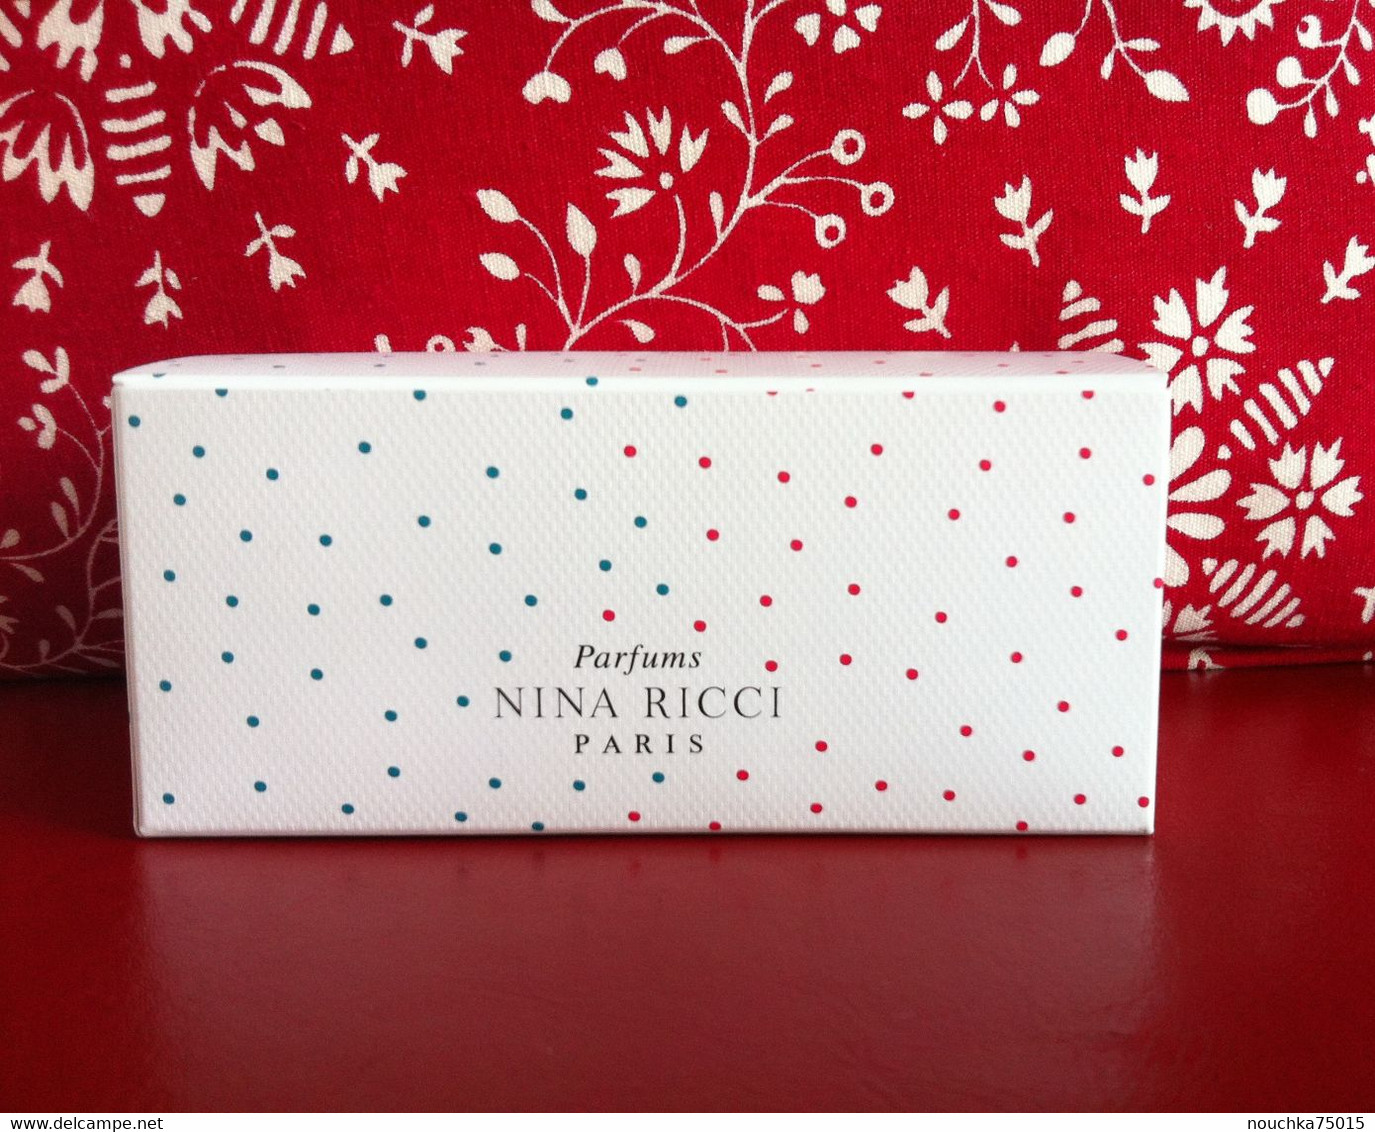 Nina Ricci - Les Gourmandises De Nina Et Luna - Kosmetika